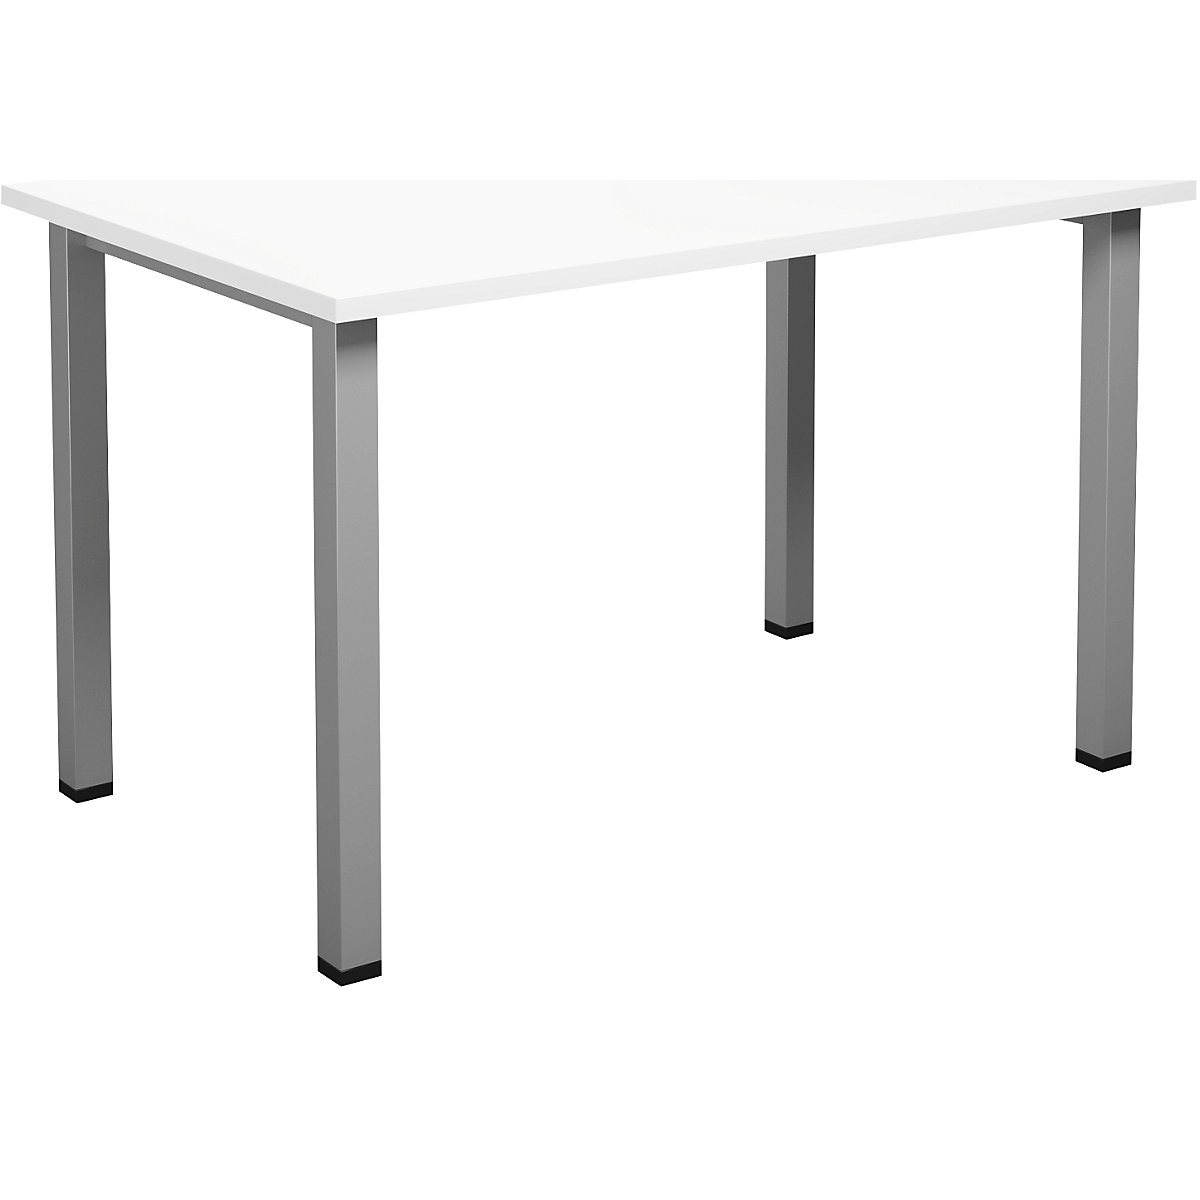 DUO-U multi-purpose desk, straight tabletop, WxD 1200 x 800 mm, white, silver-17